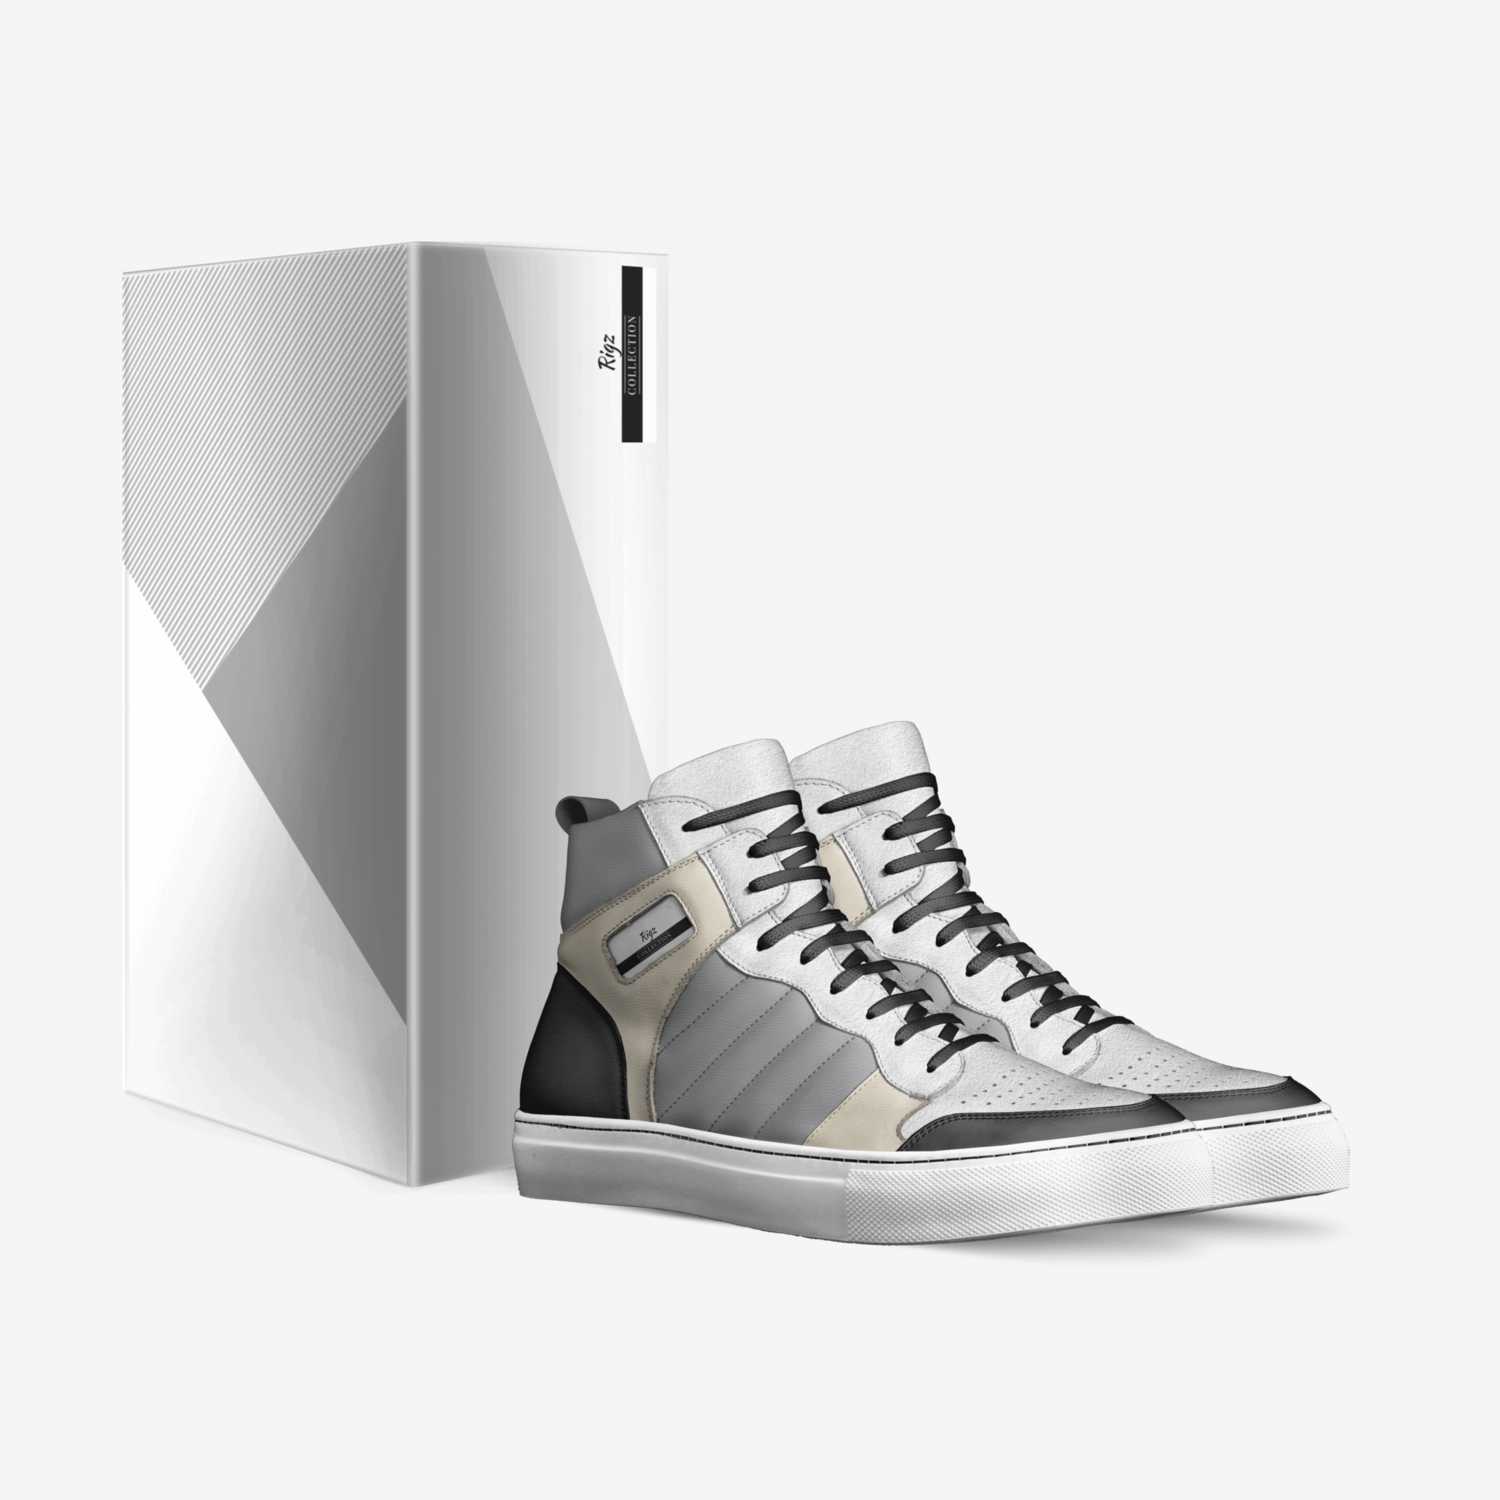 Rigz custom made in Italy shoes by Rigoberto De Los Rios | Box view